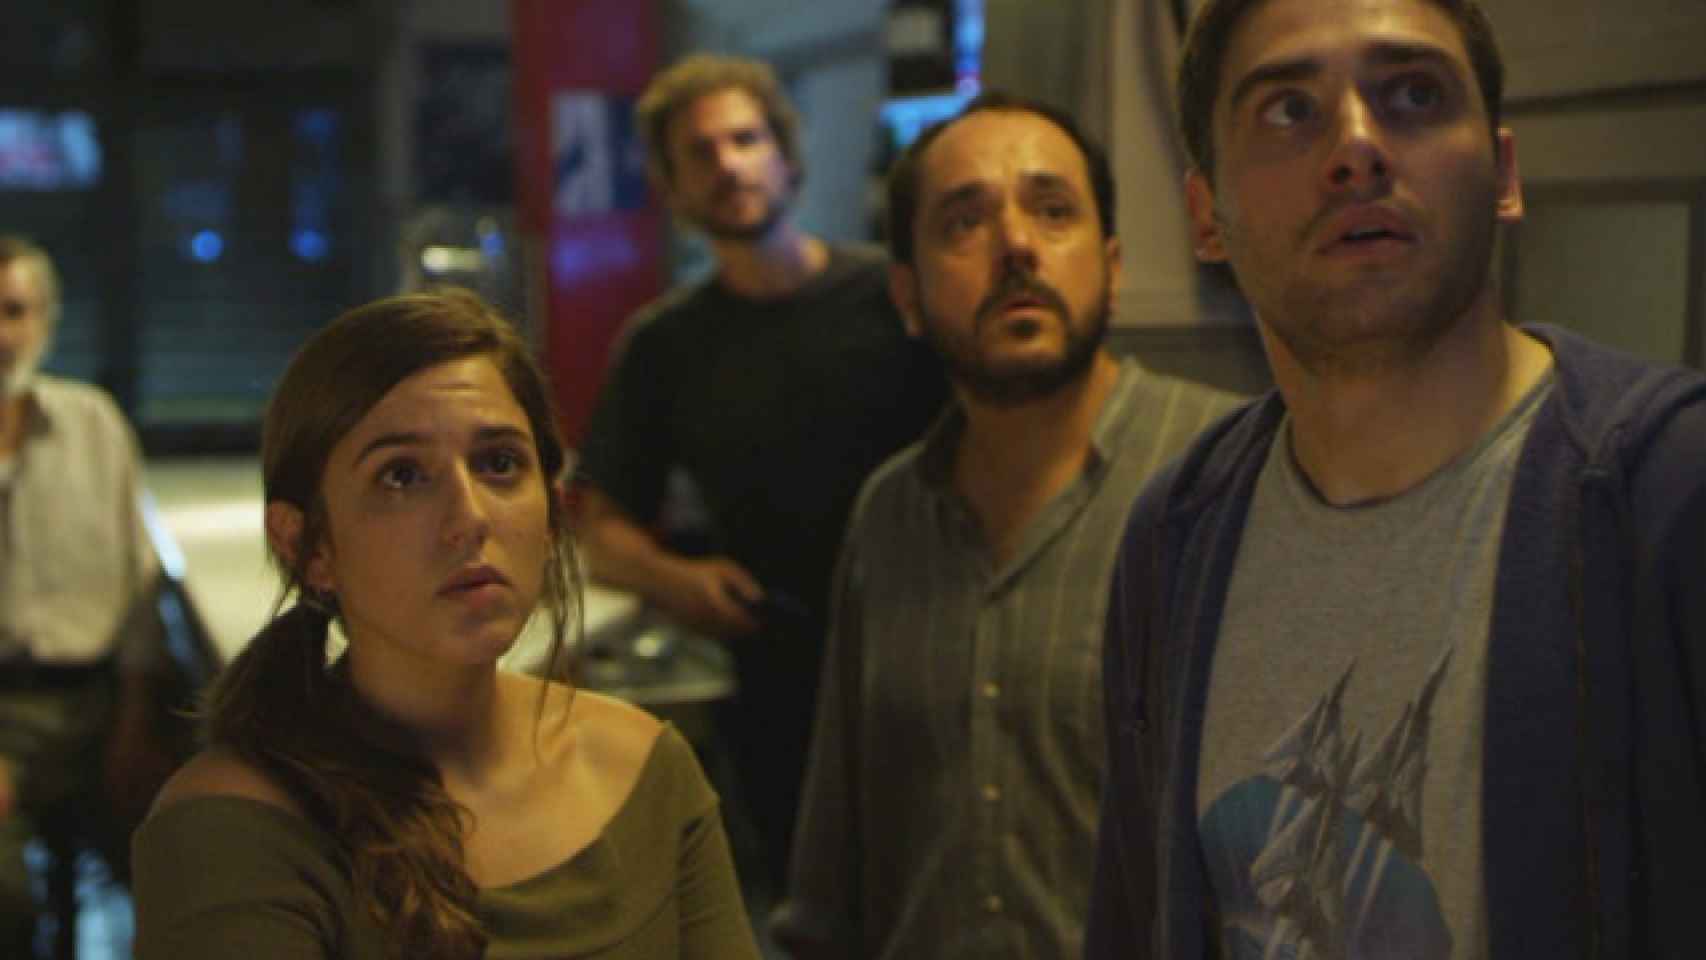 Filmin estrenará 'Distopía', la 'Black Mirror' española